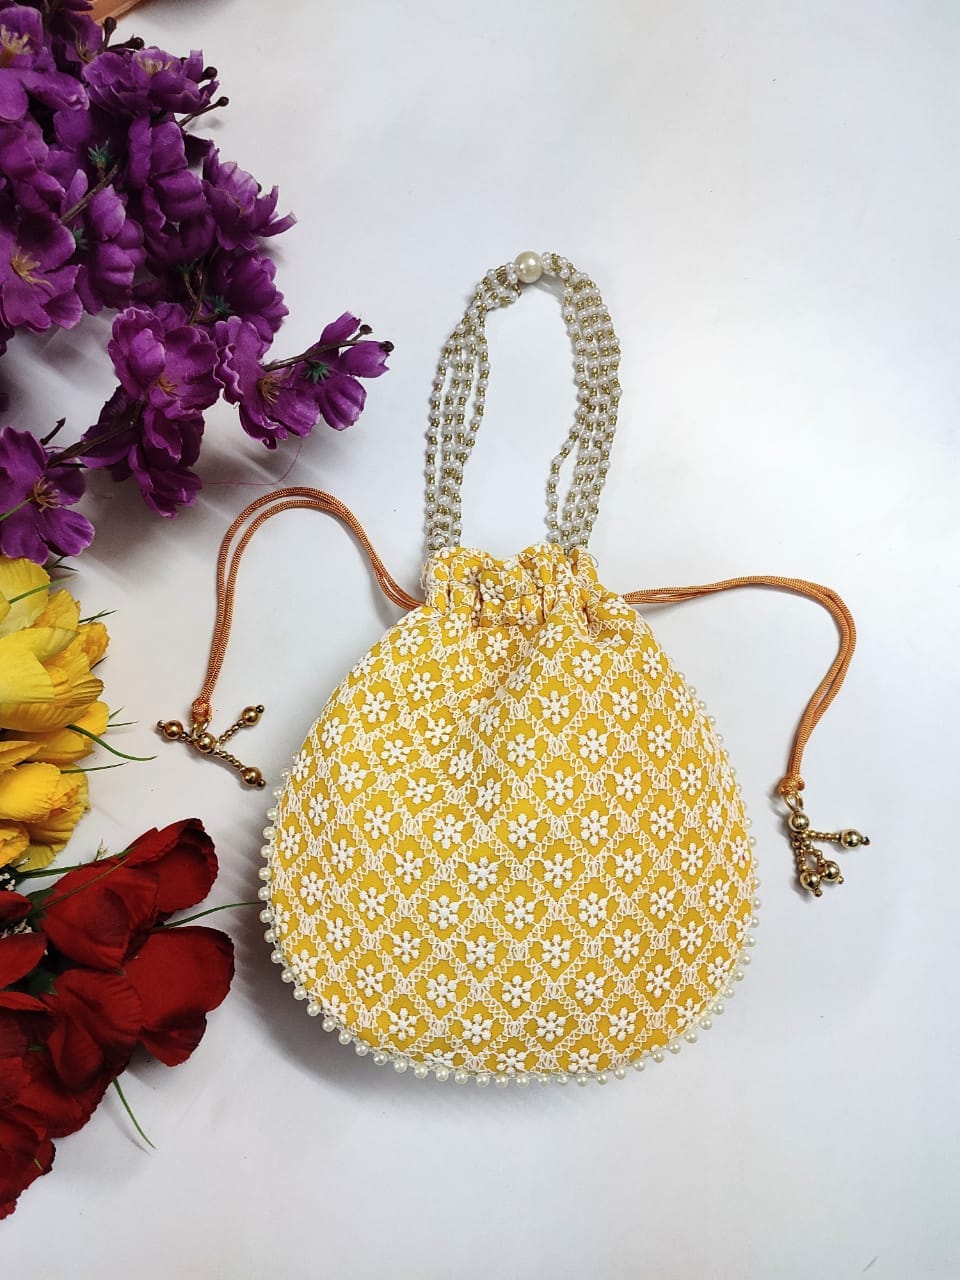 LAMANSH ® Women's Potli Bag Pack of 1 LAMANSH® (Size - 6*8 inch) Lucknavi Chikankari work potli bags for gifting / Designer Potli bags for indian wedding ceremonies